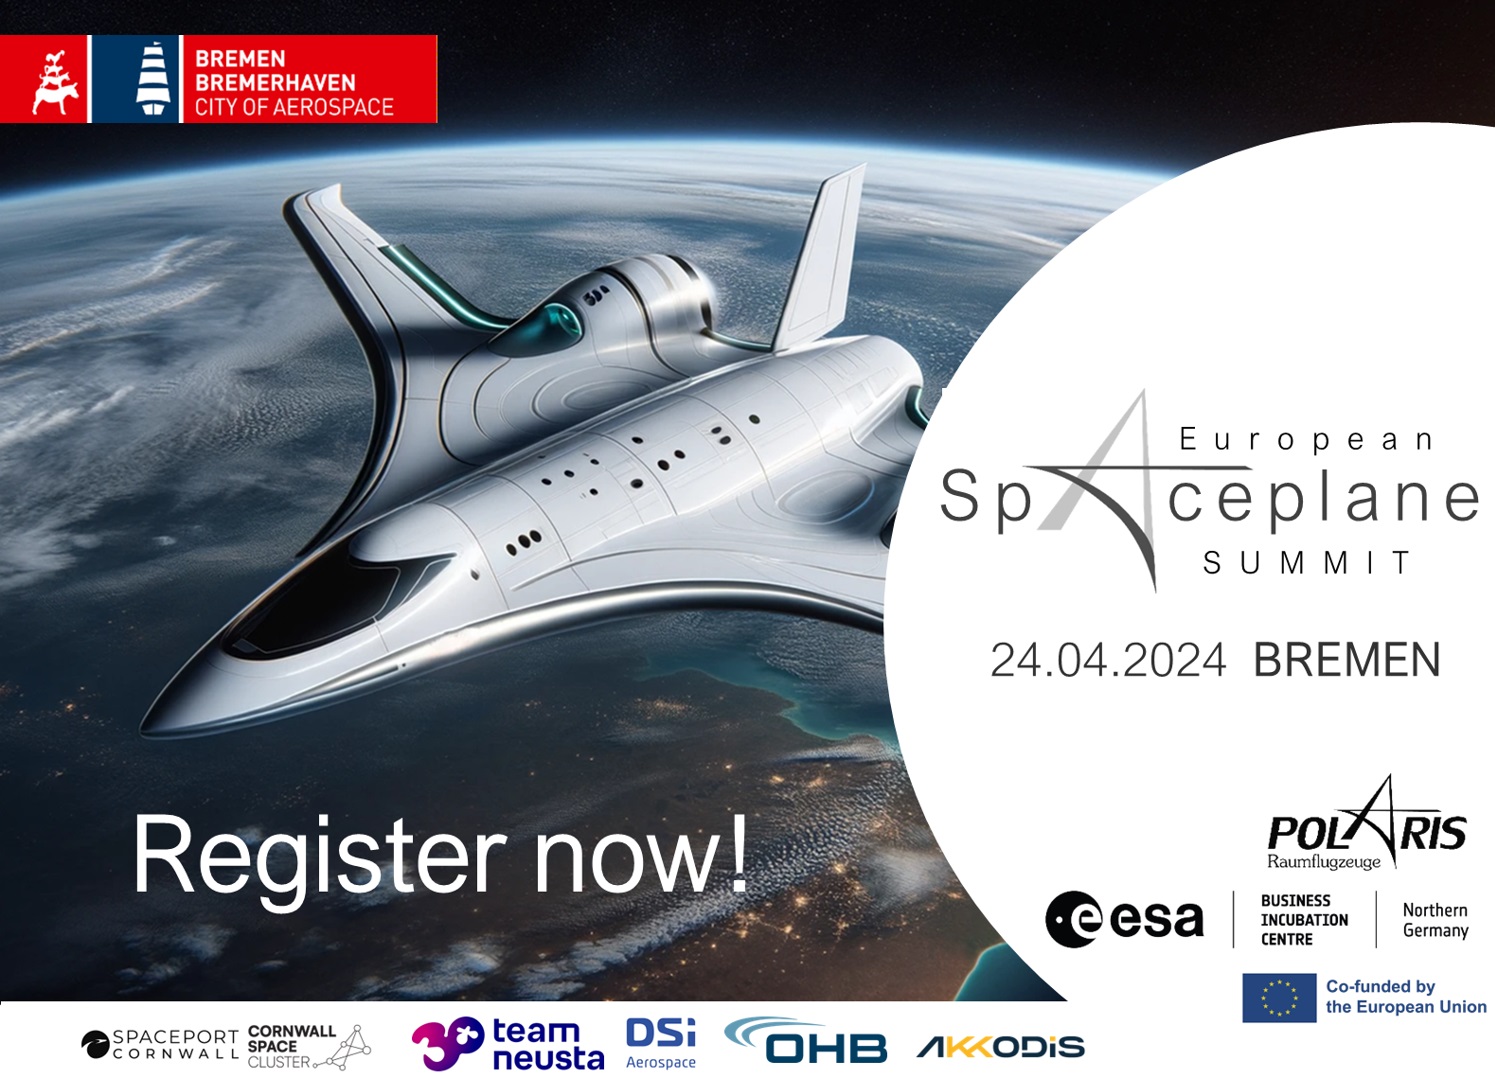 1st European Spaceplane Summit